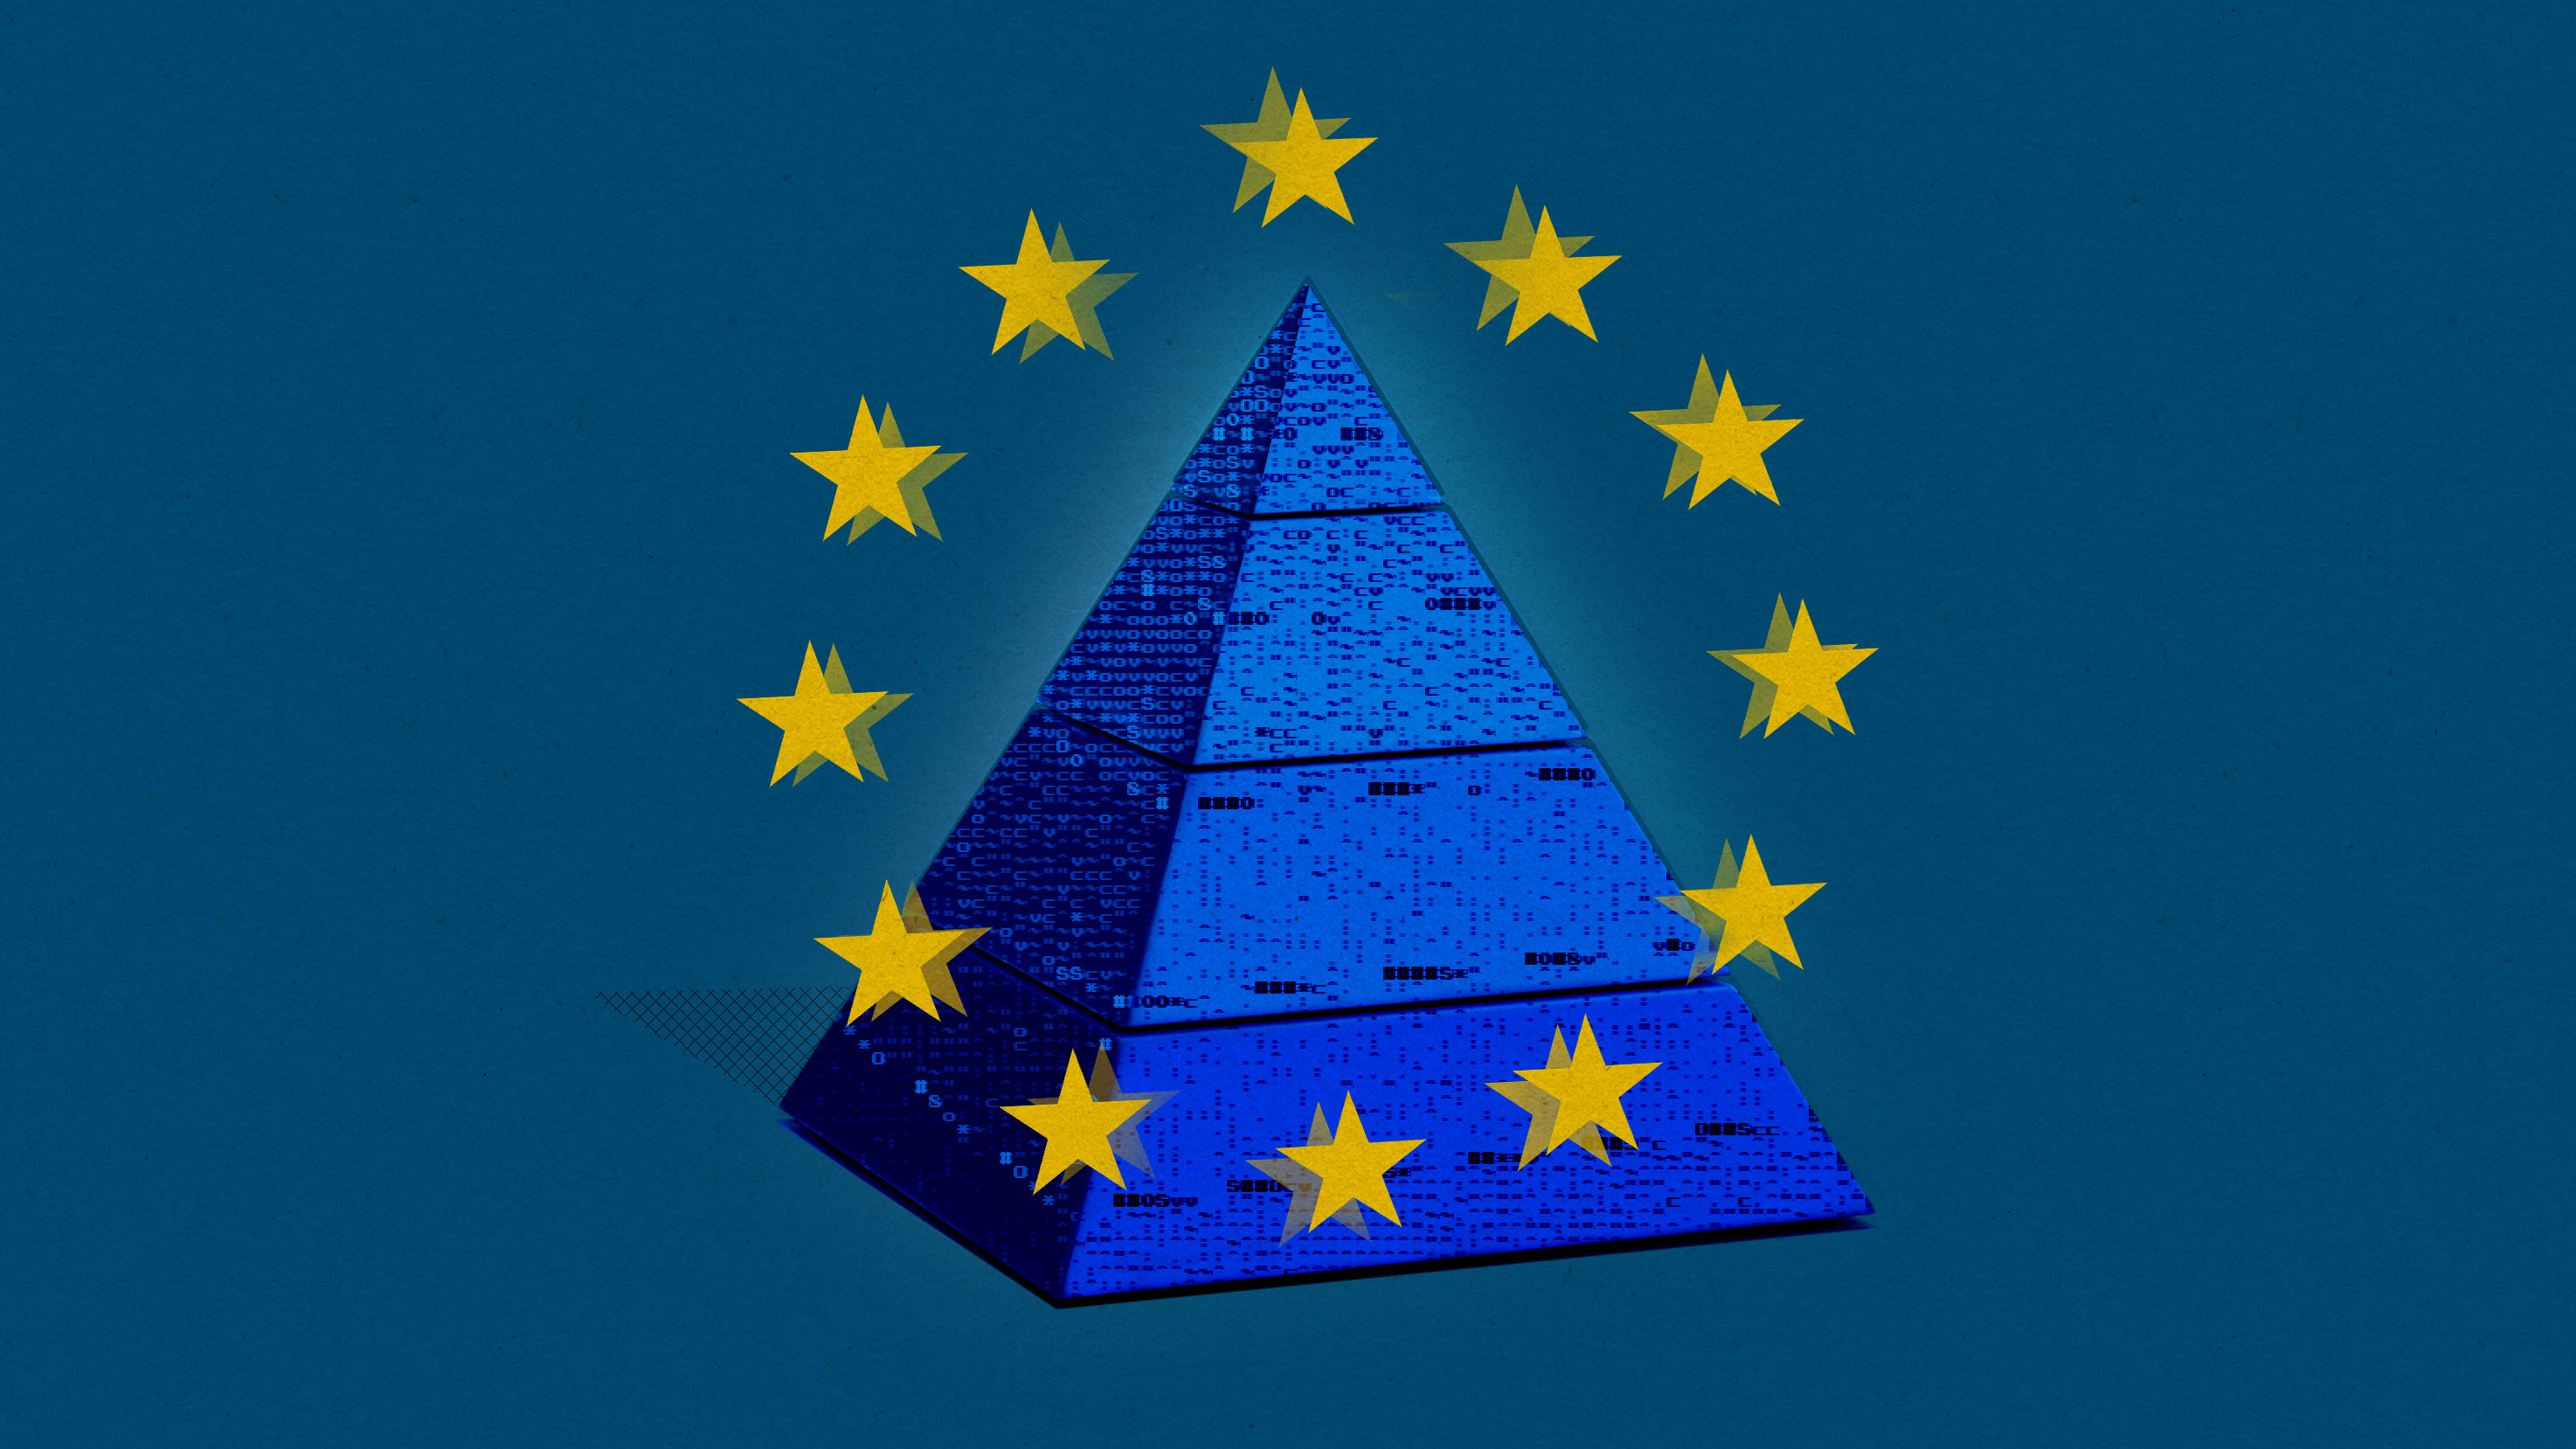 欧盟国旗黄色星圈下方带有ascii字符的蓝色四阶段风险评估金字塔